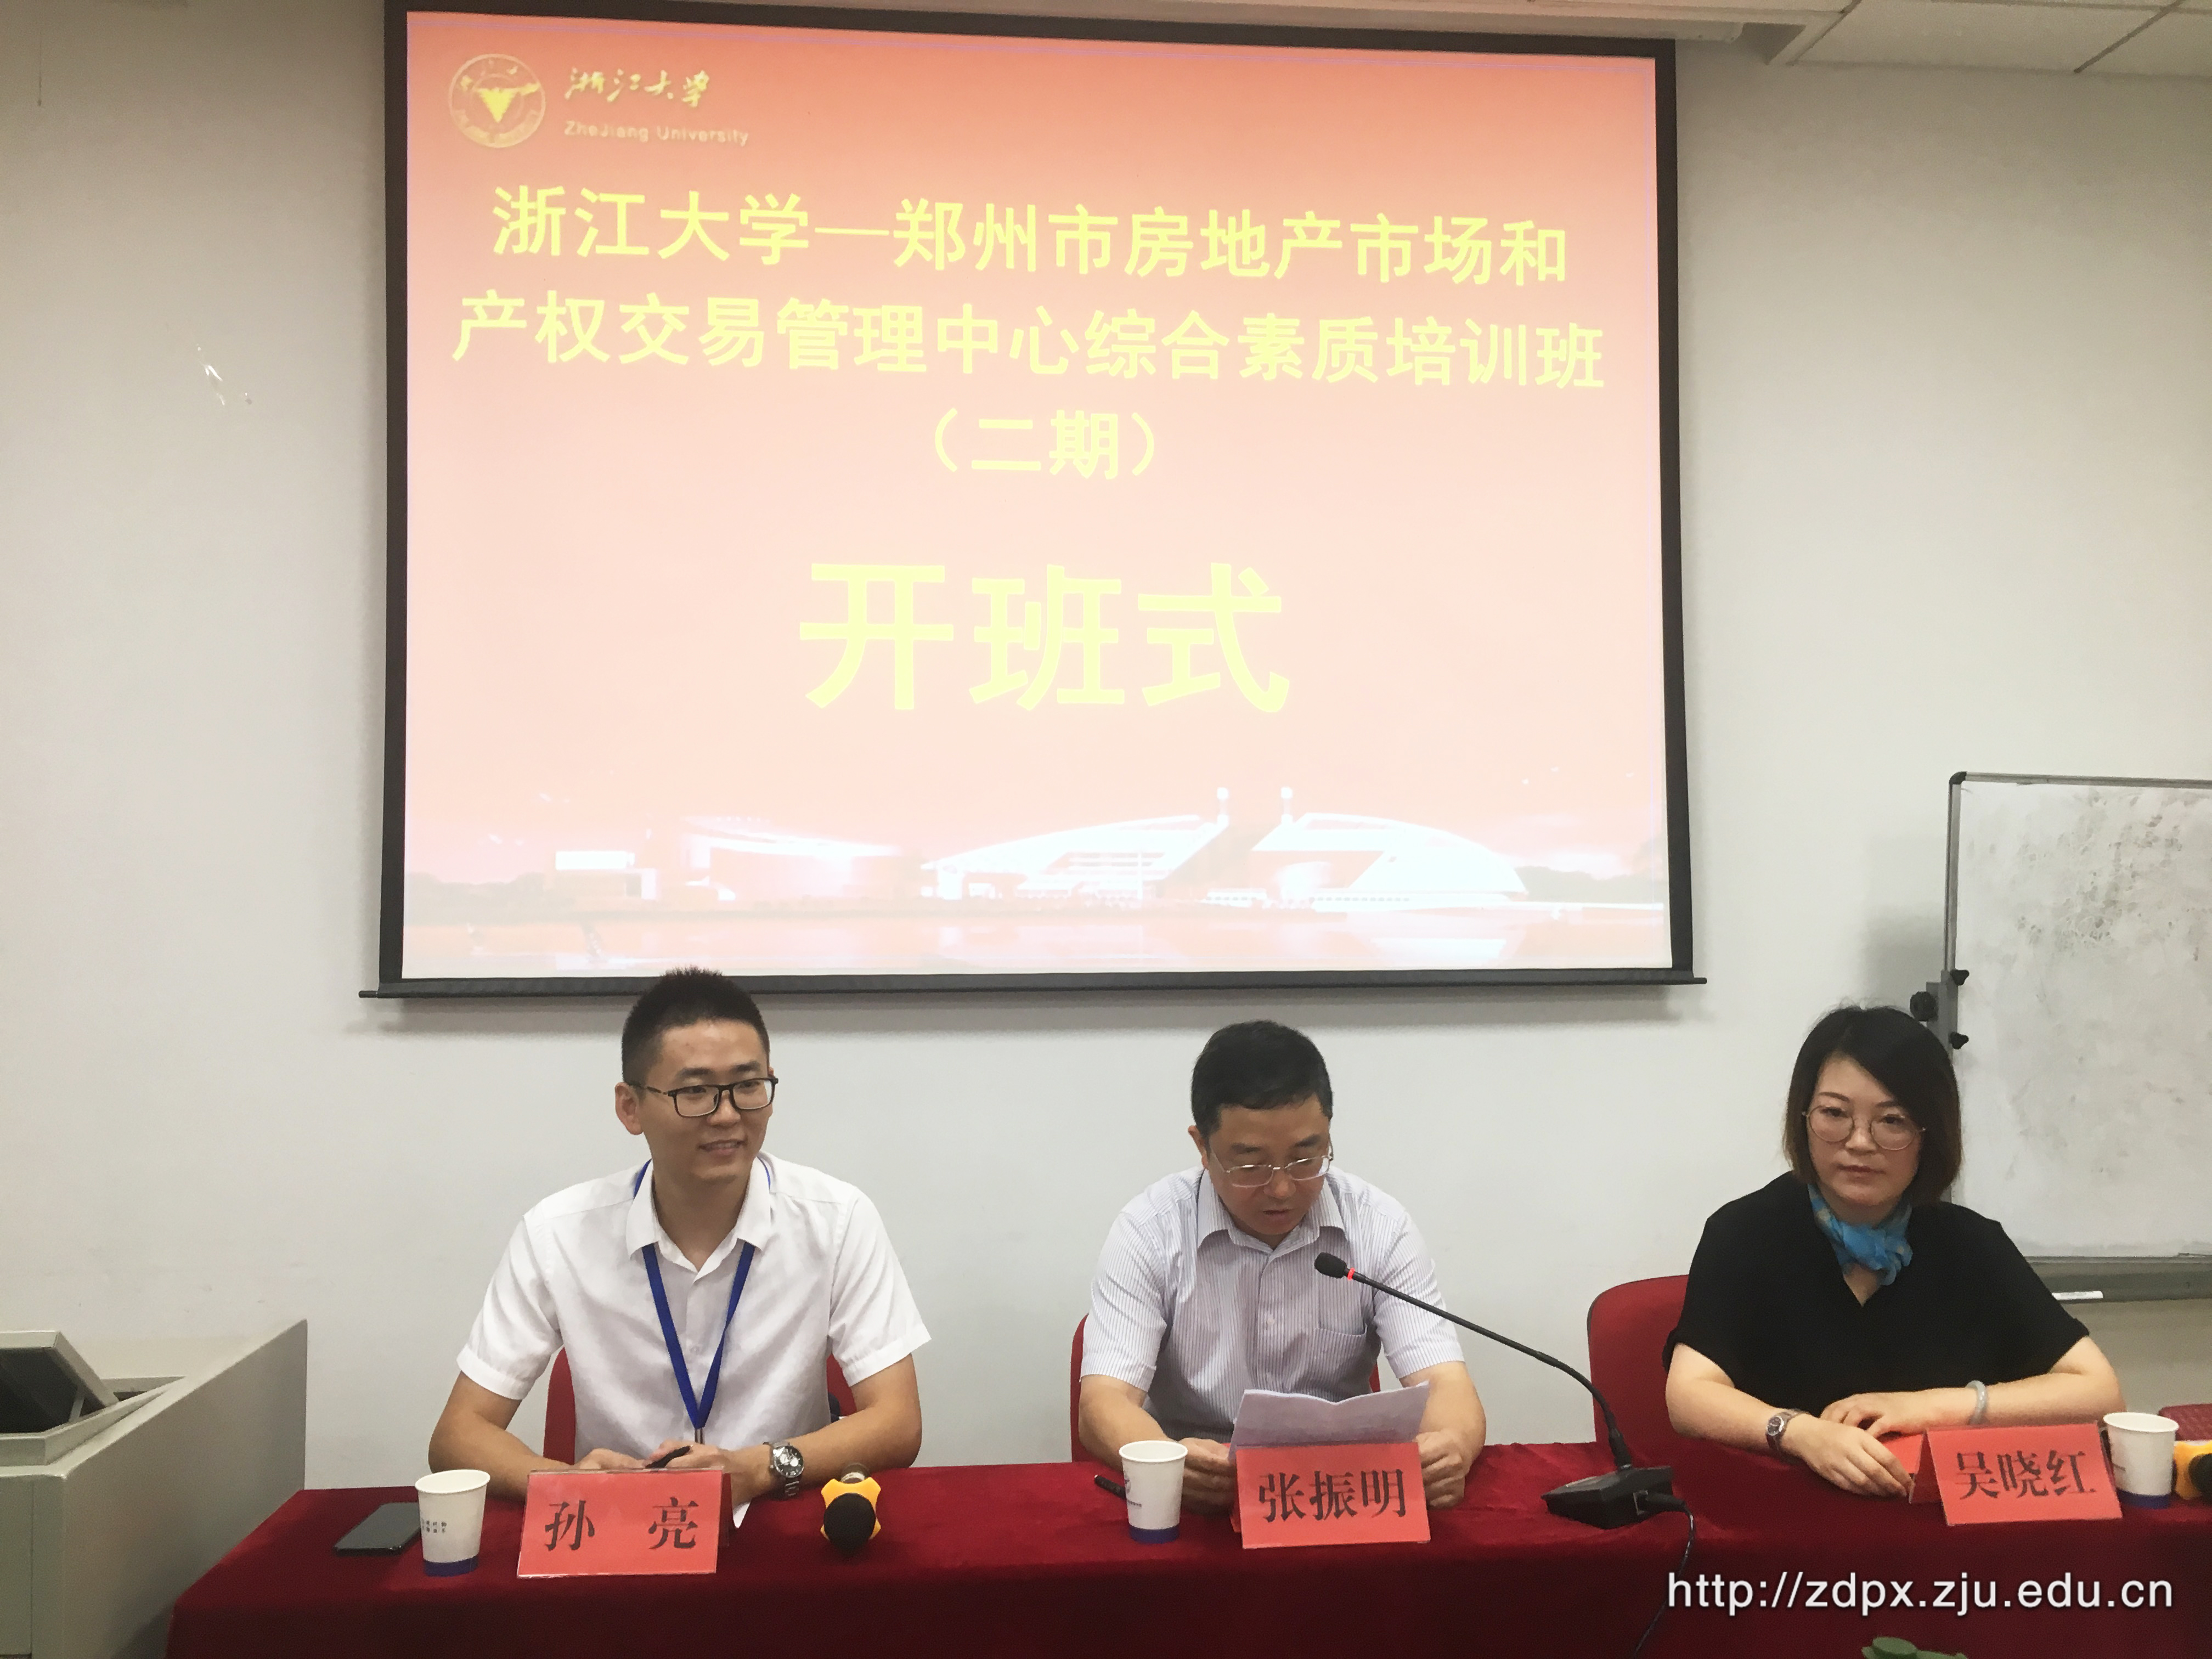 第二期郑州市房地产市场和产权交易管理中心培训班在浙大顺利举办